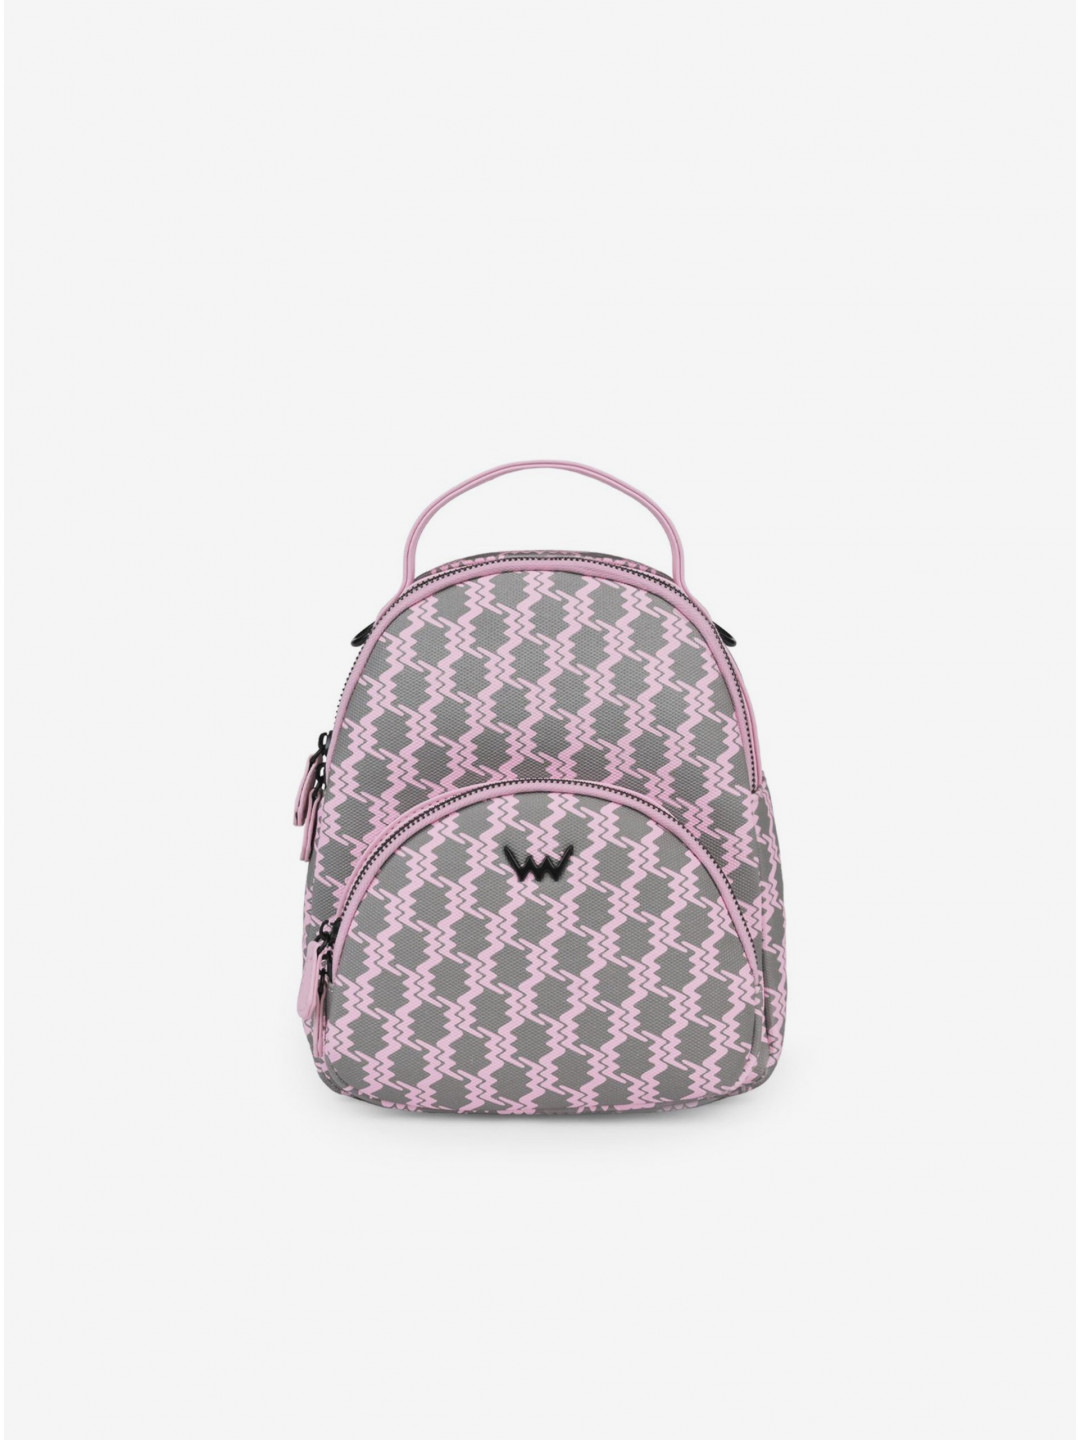 Šedo-růžový dámský vzorovaný batoh kabelka VUCH Ezio